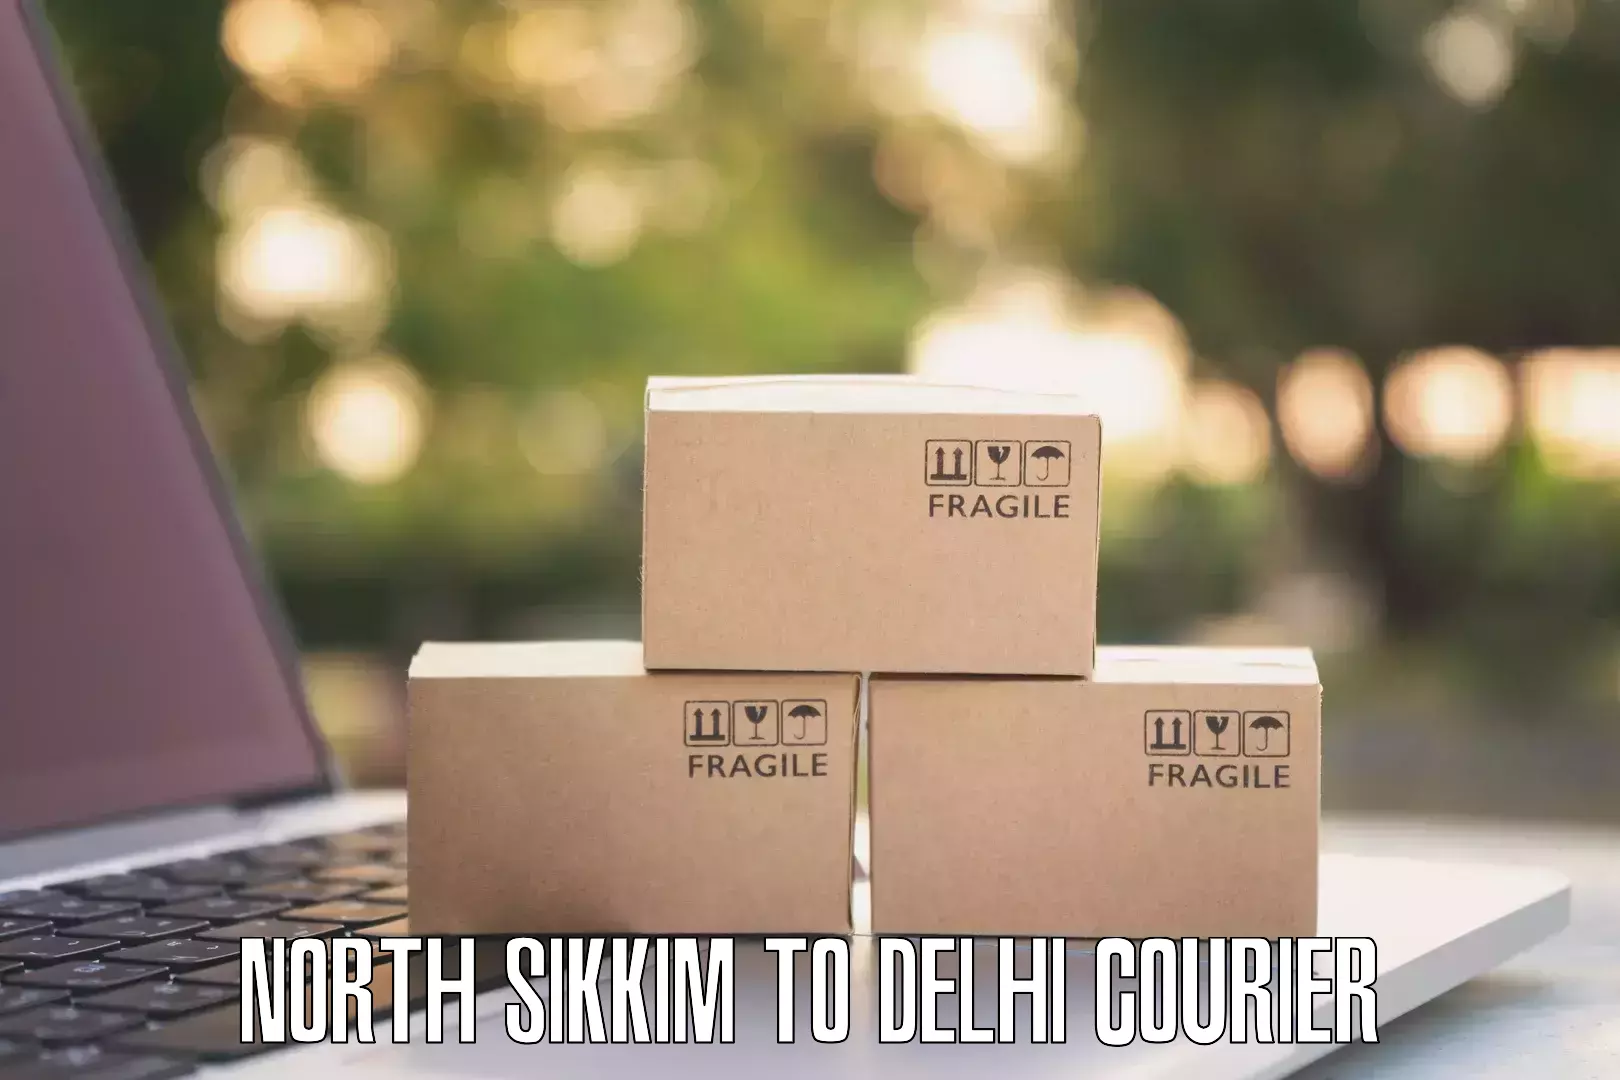 Courier services North Sikkim to Jawaharlal Nehru University New Delhi